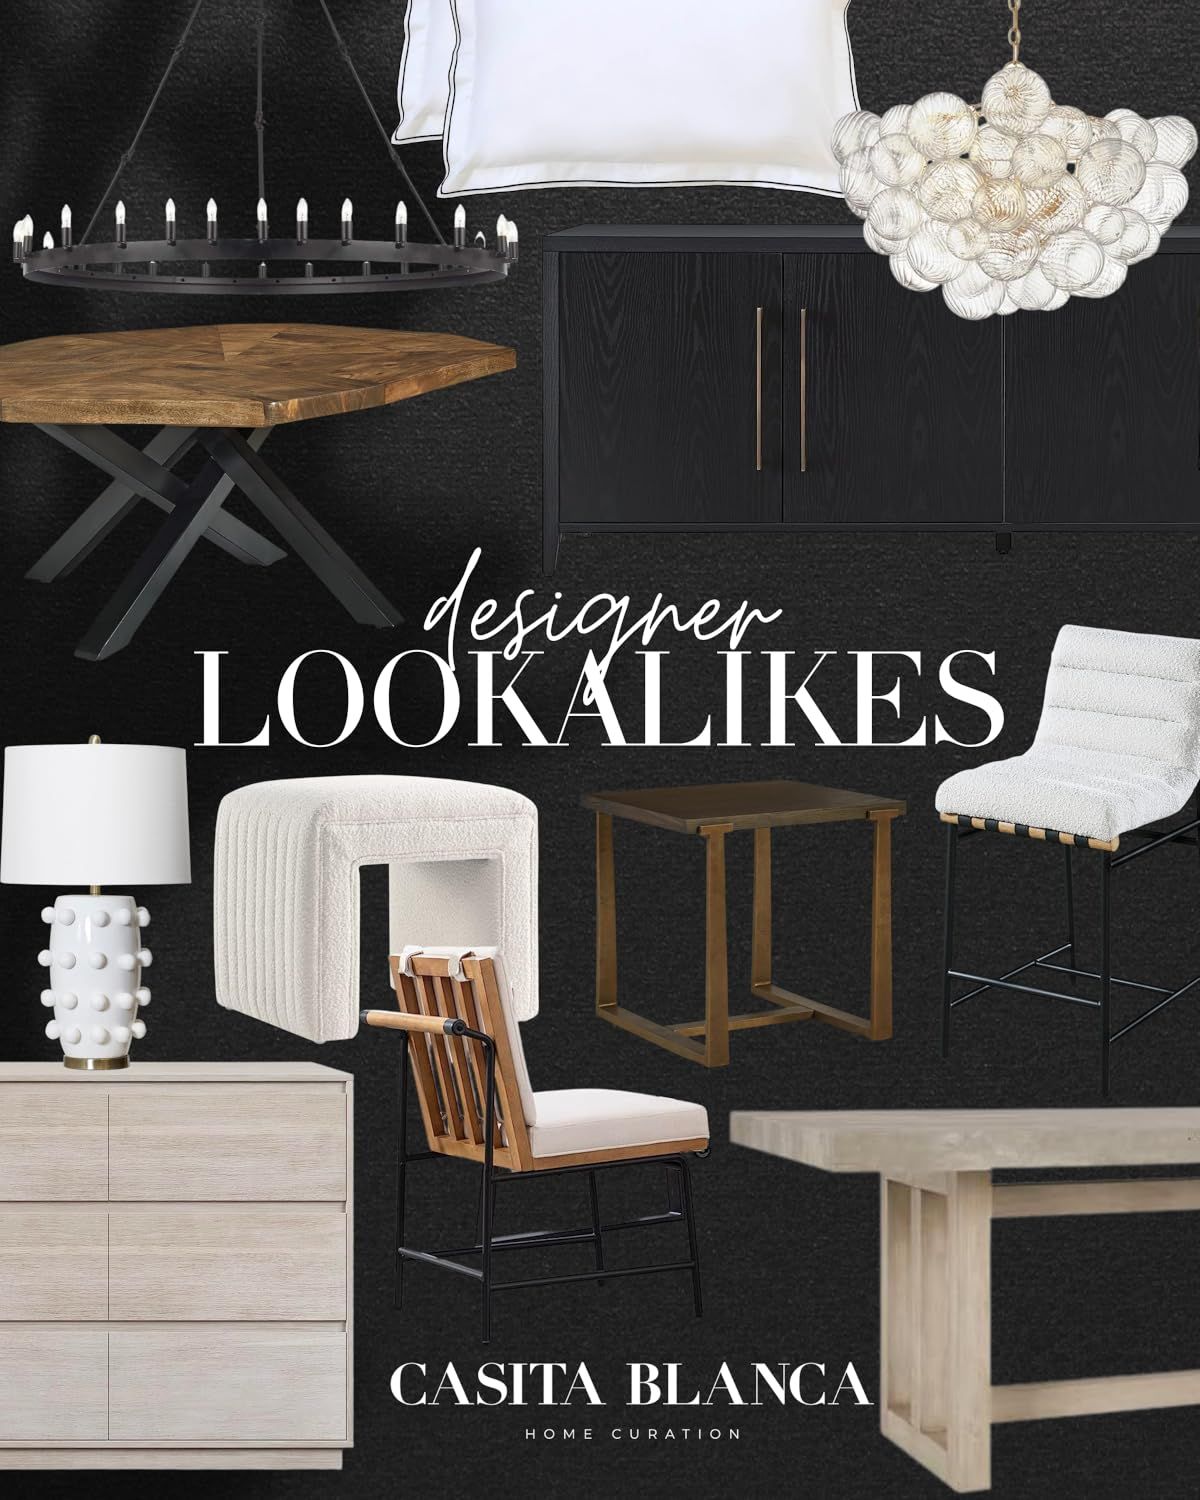 Designer lookalikes | Amazon (US)